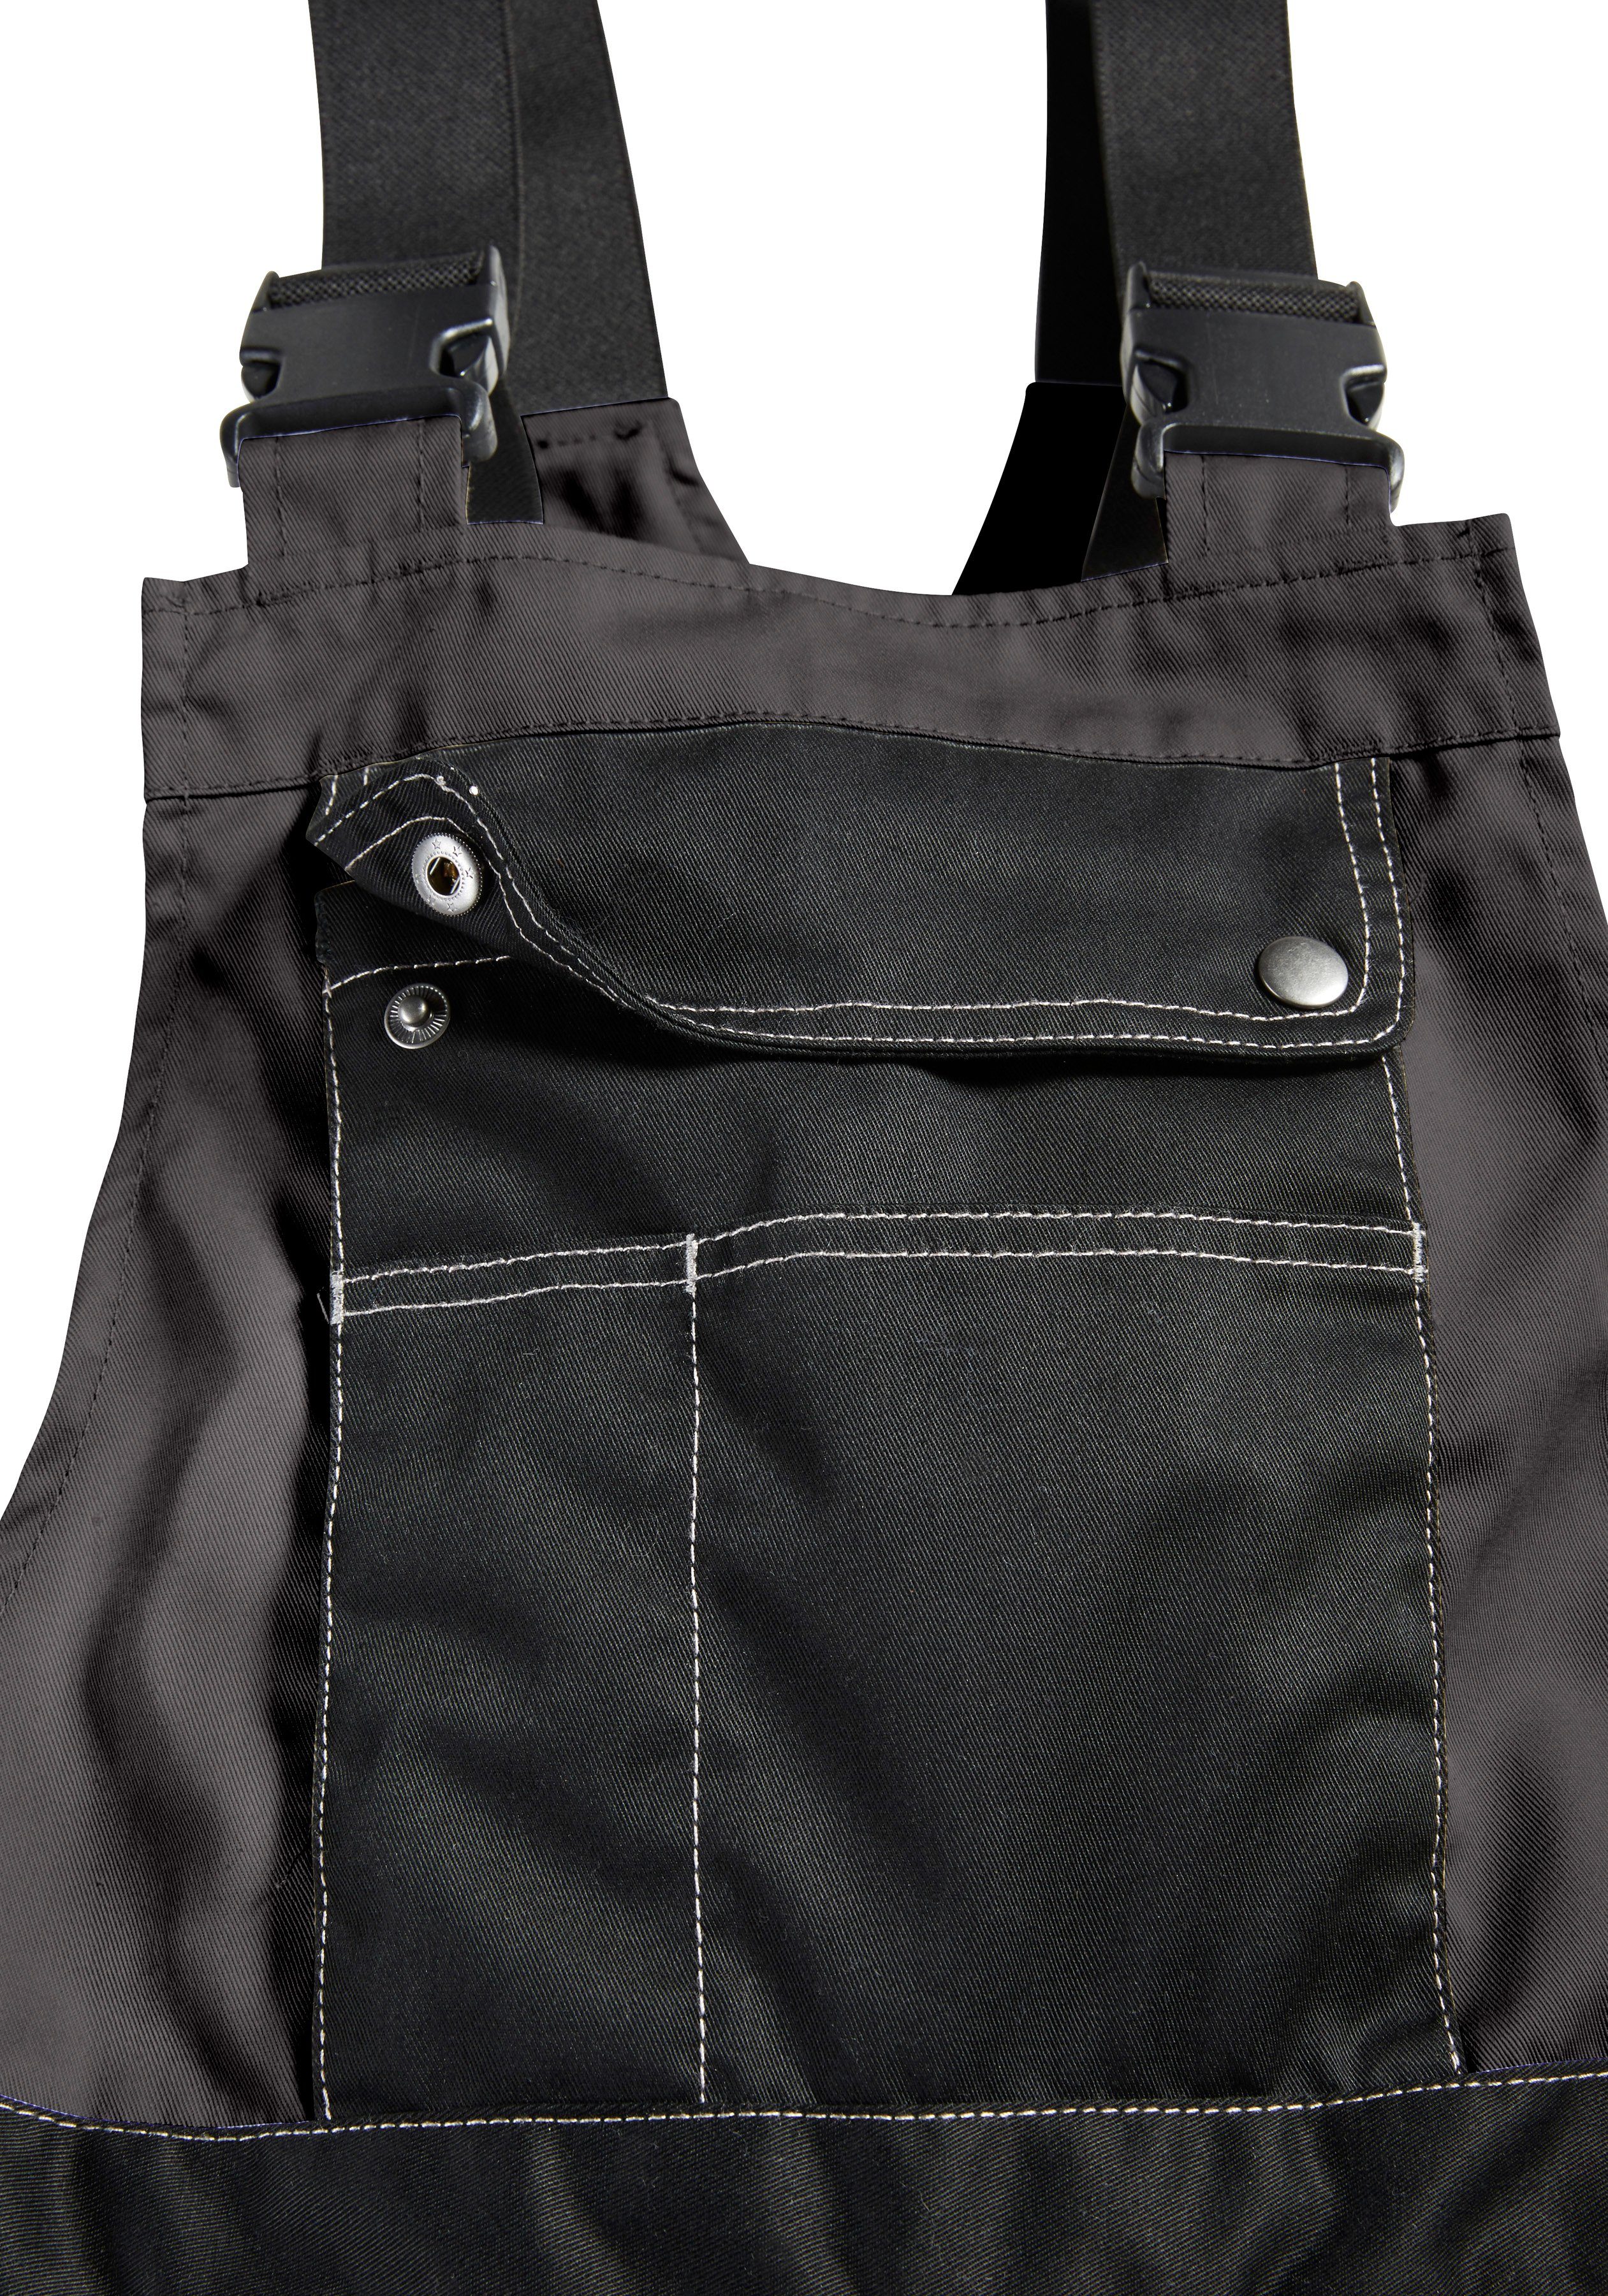 Northern Country Latzhose Worker Kniebereich, Taschen 11 dehnbarer mit mit verstärktem grau-schwarz Bund, robust